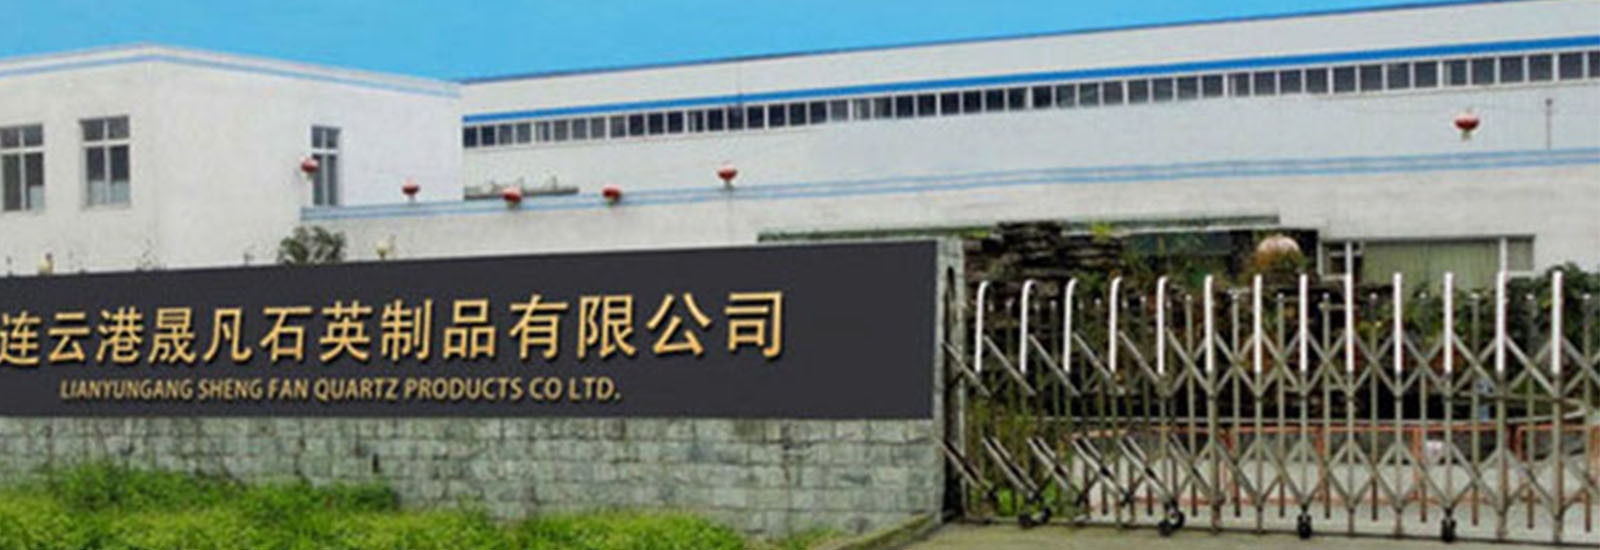 الصين Lianyungang Shengfan Quartz Product Co., Ltd ملف الشركة